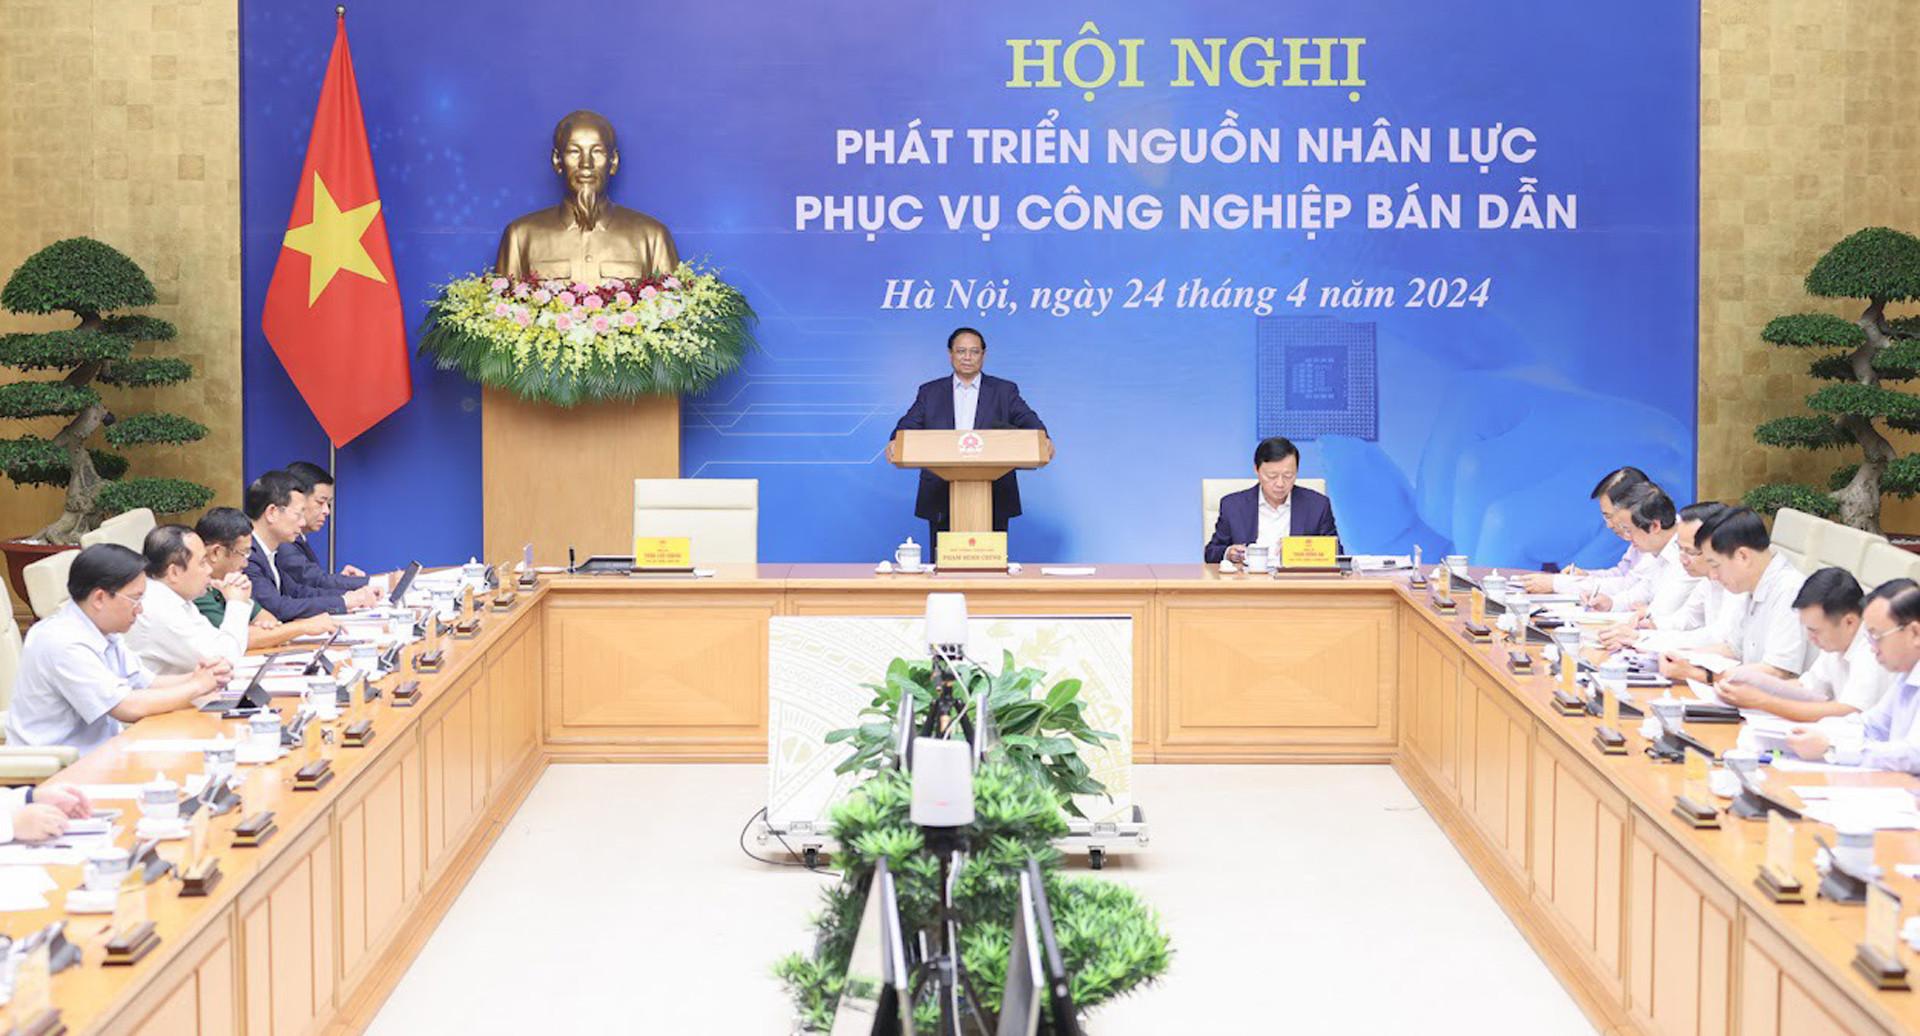  Nhân lực là lõi để xây dựng ngành công nghiệp bán dẫn Việt Nam 